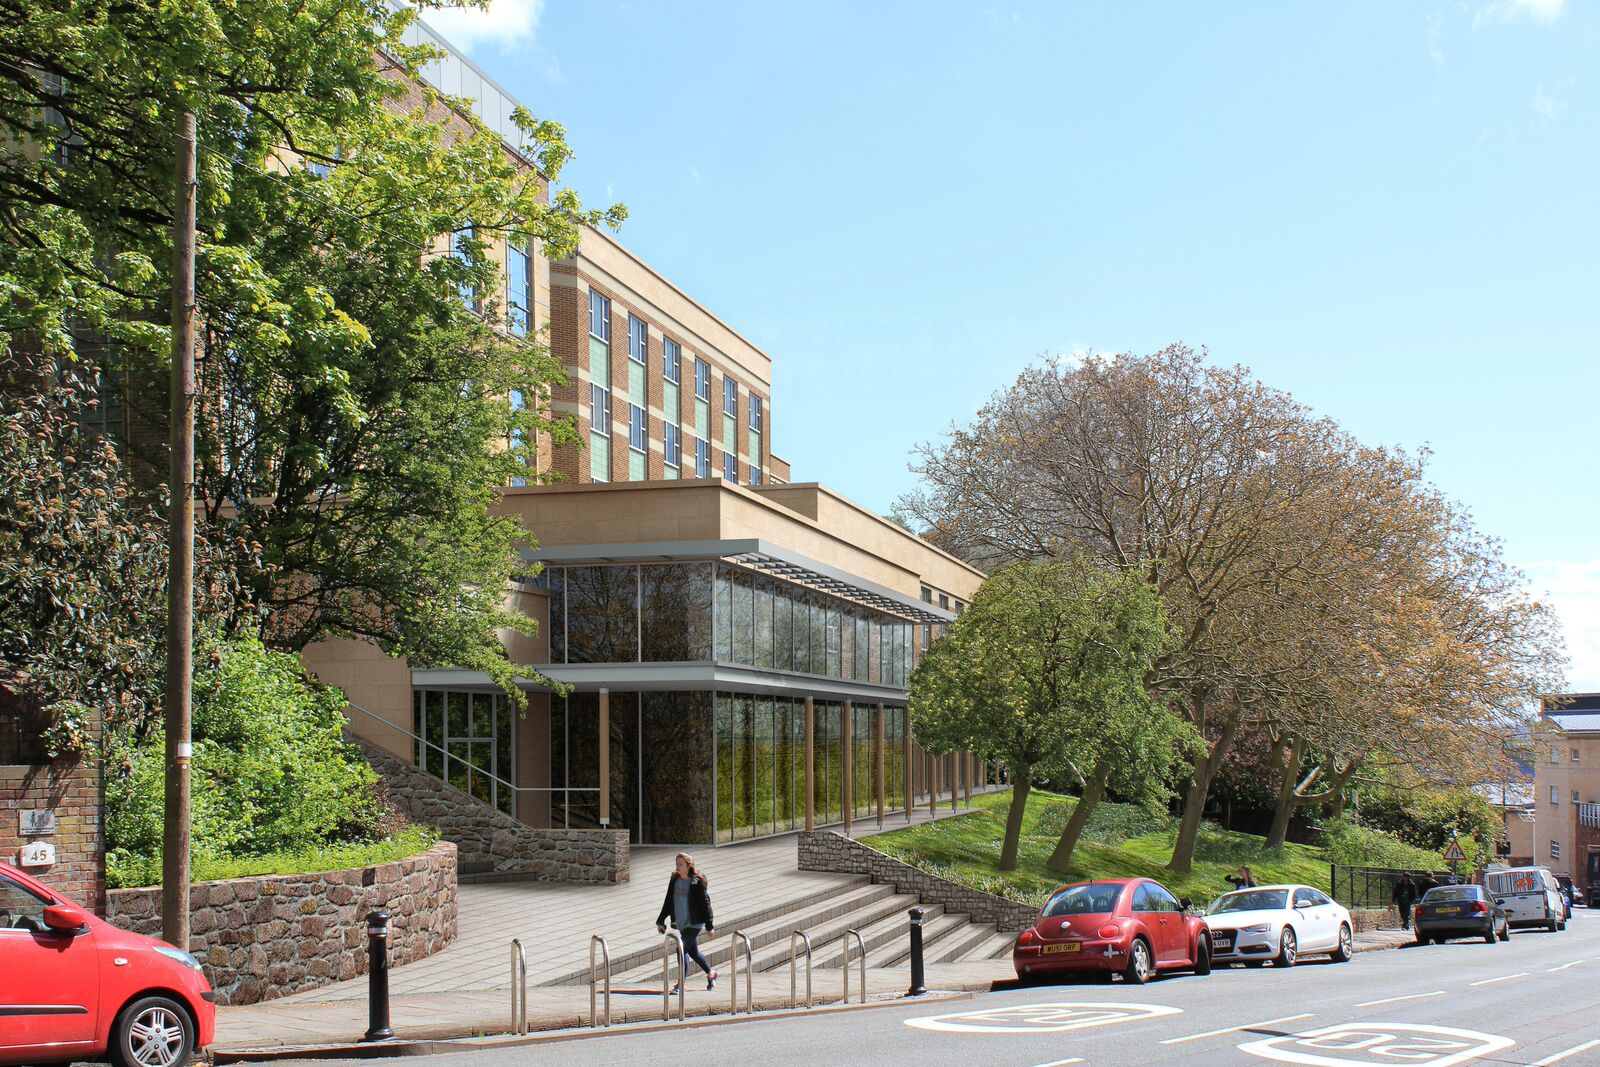 University of Bristol – Queens Building